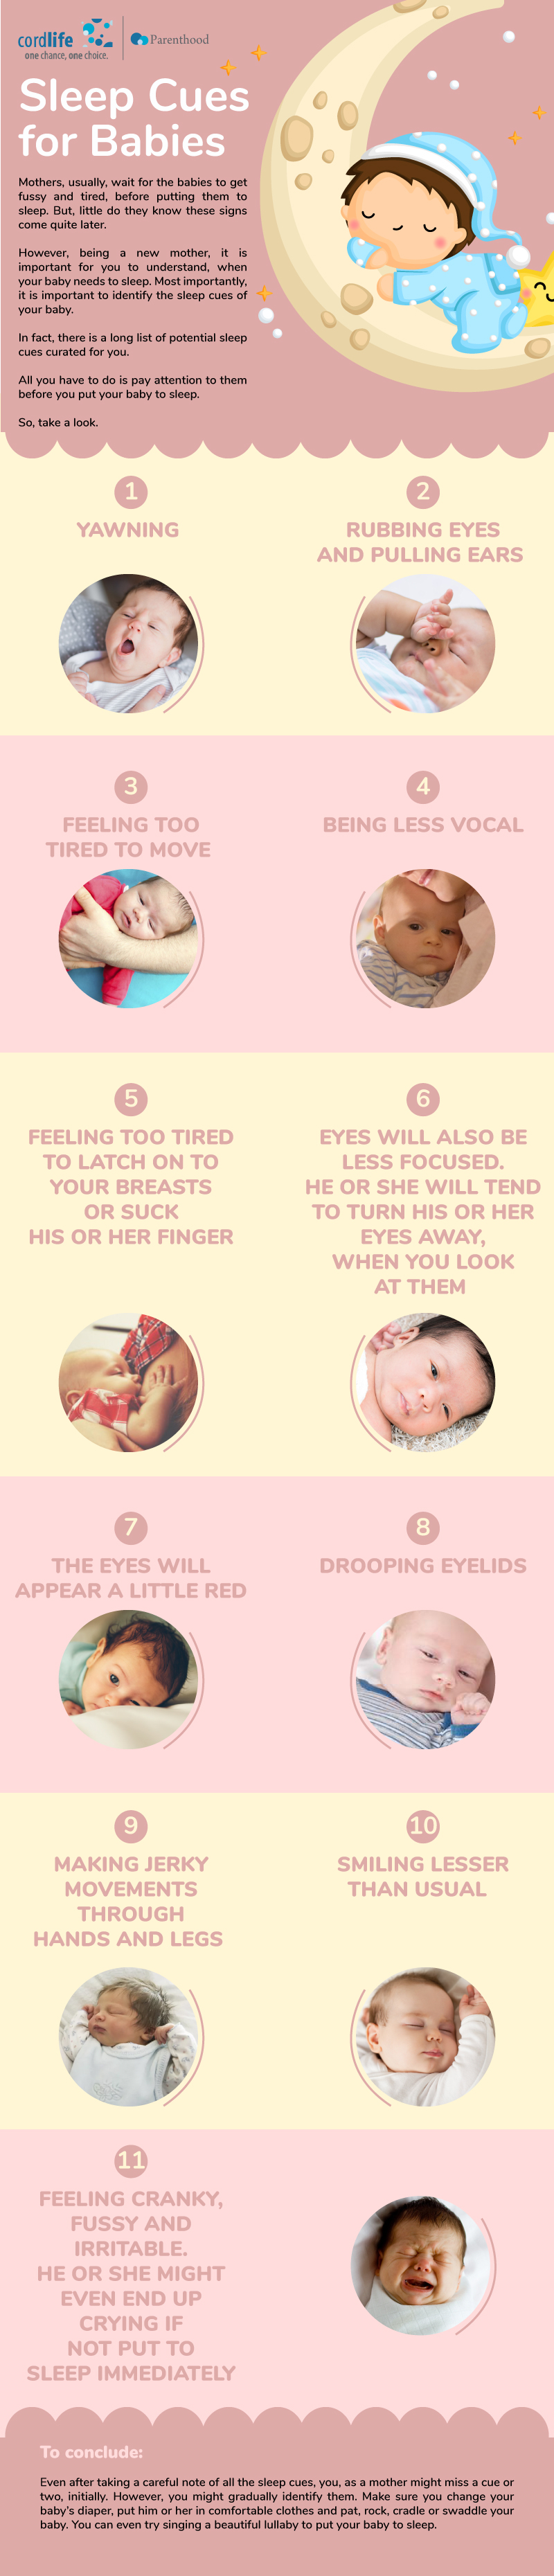 Sleep Cues for Babies